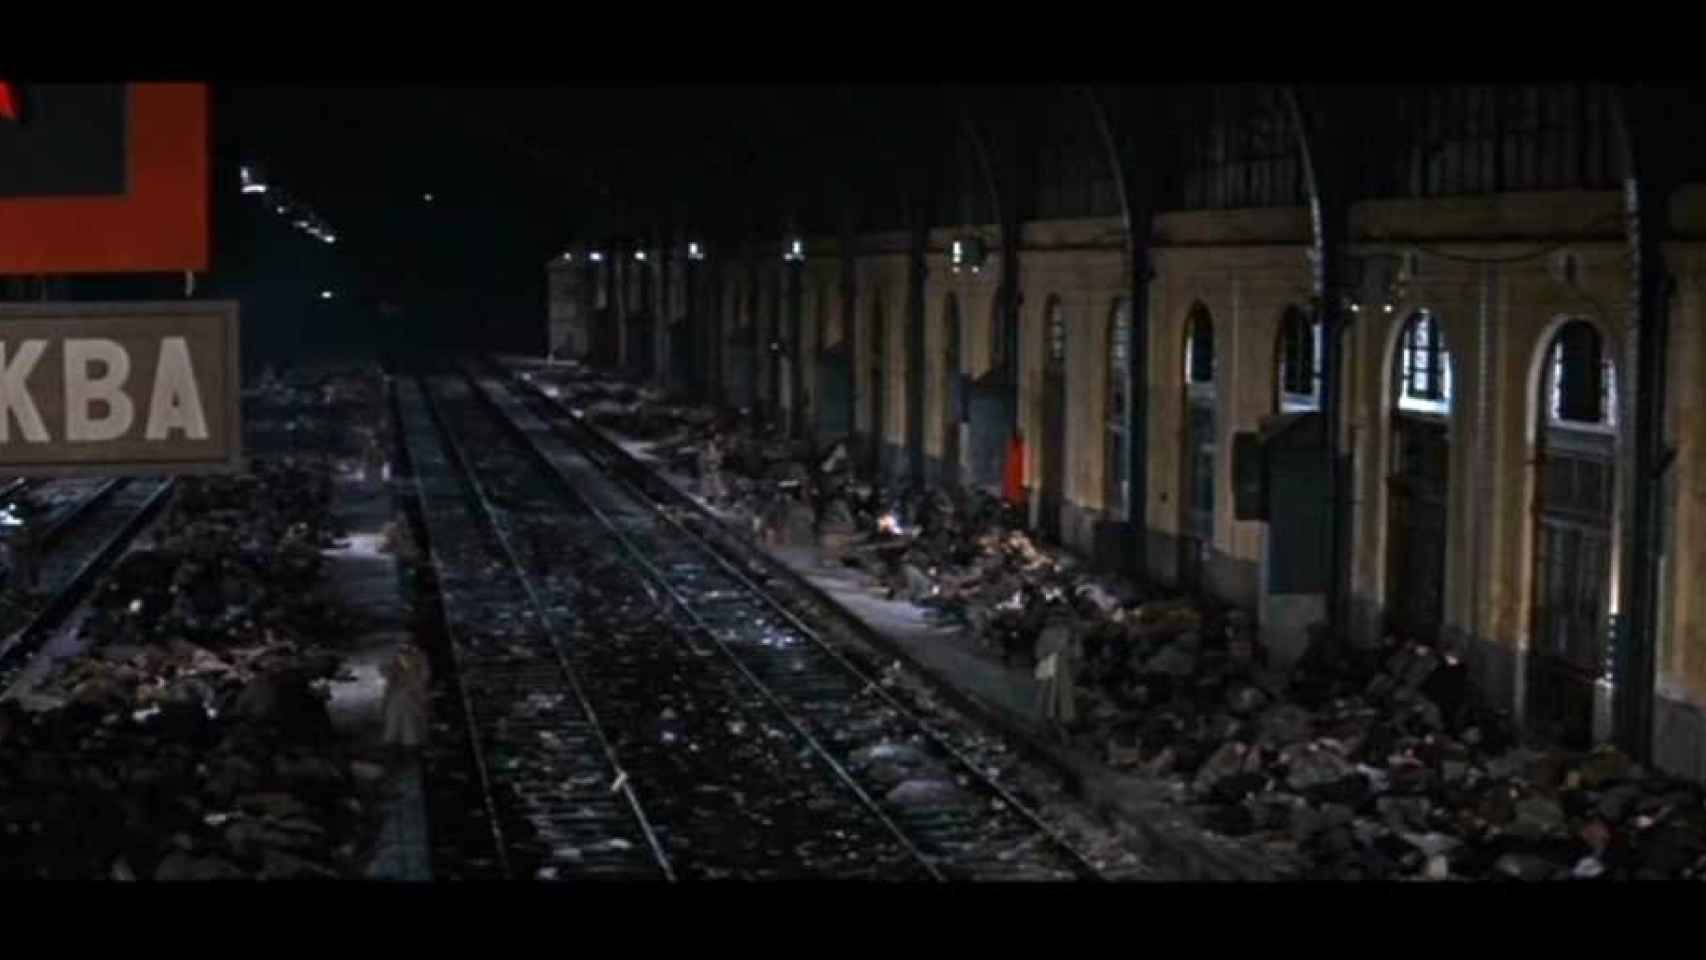 Escena de la película Doctor Zhivago (1965) rodada en la Estación del Norte de Valladolid.